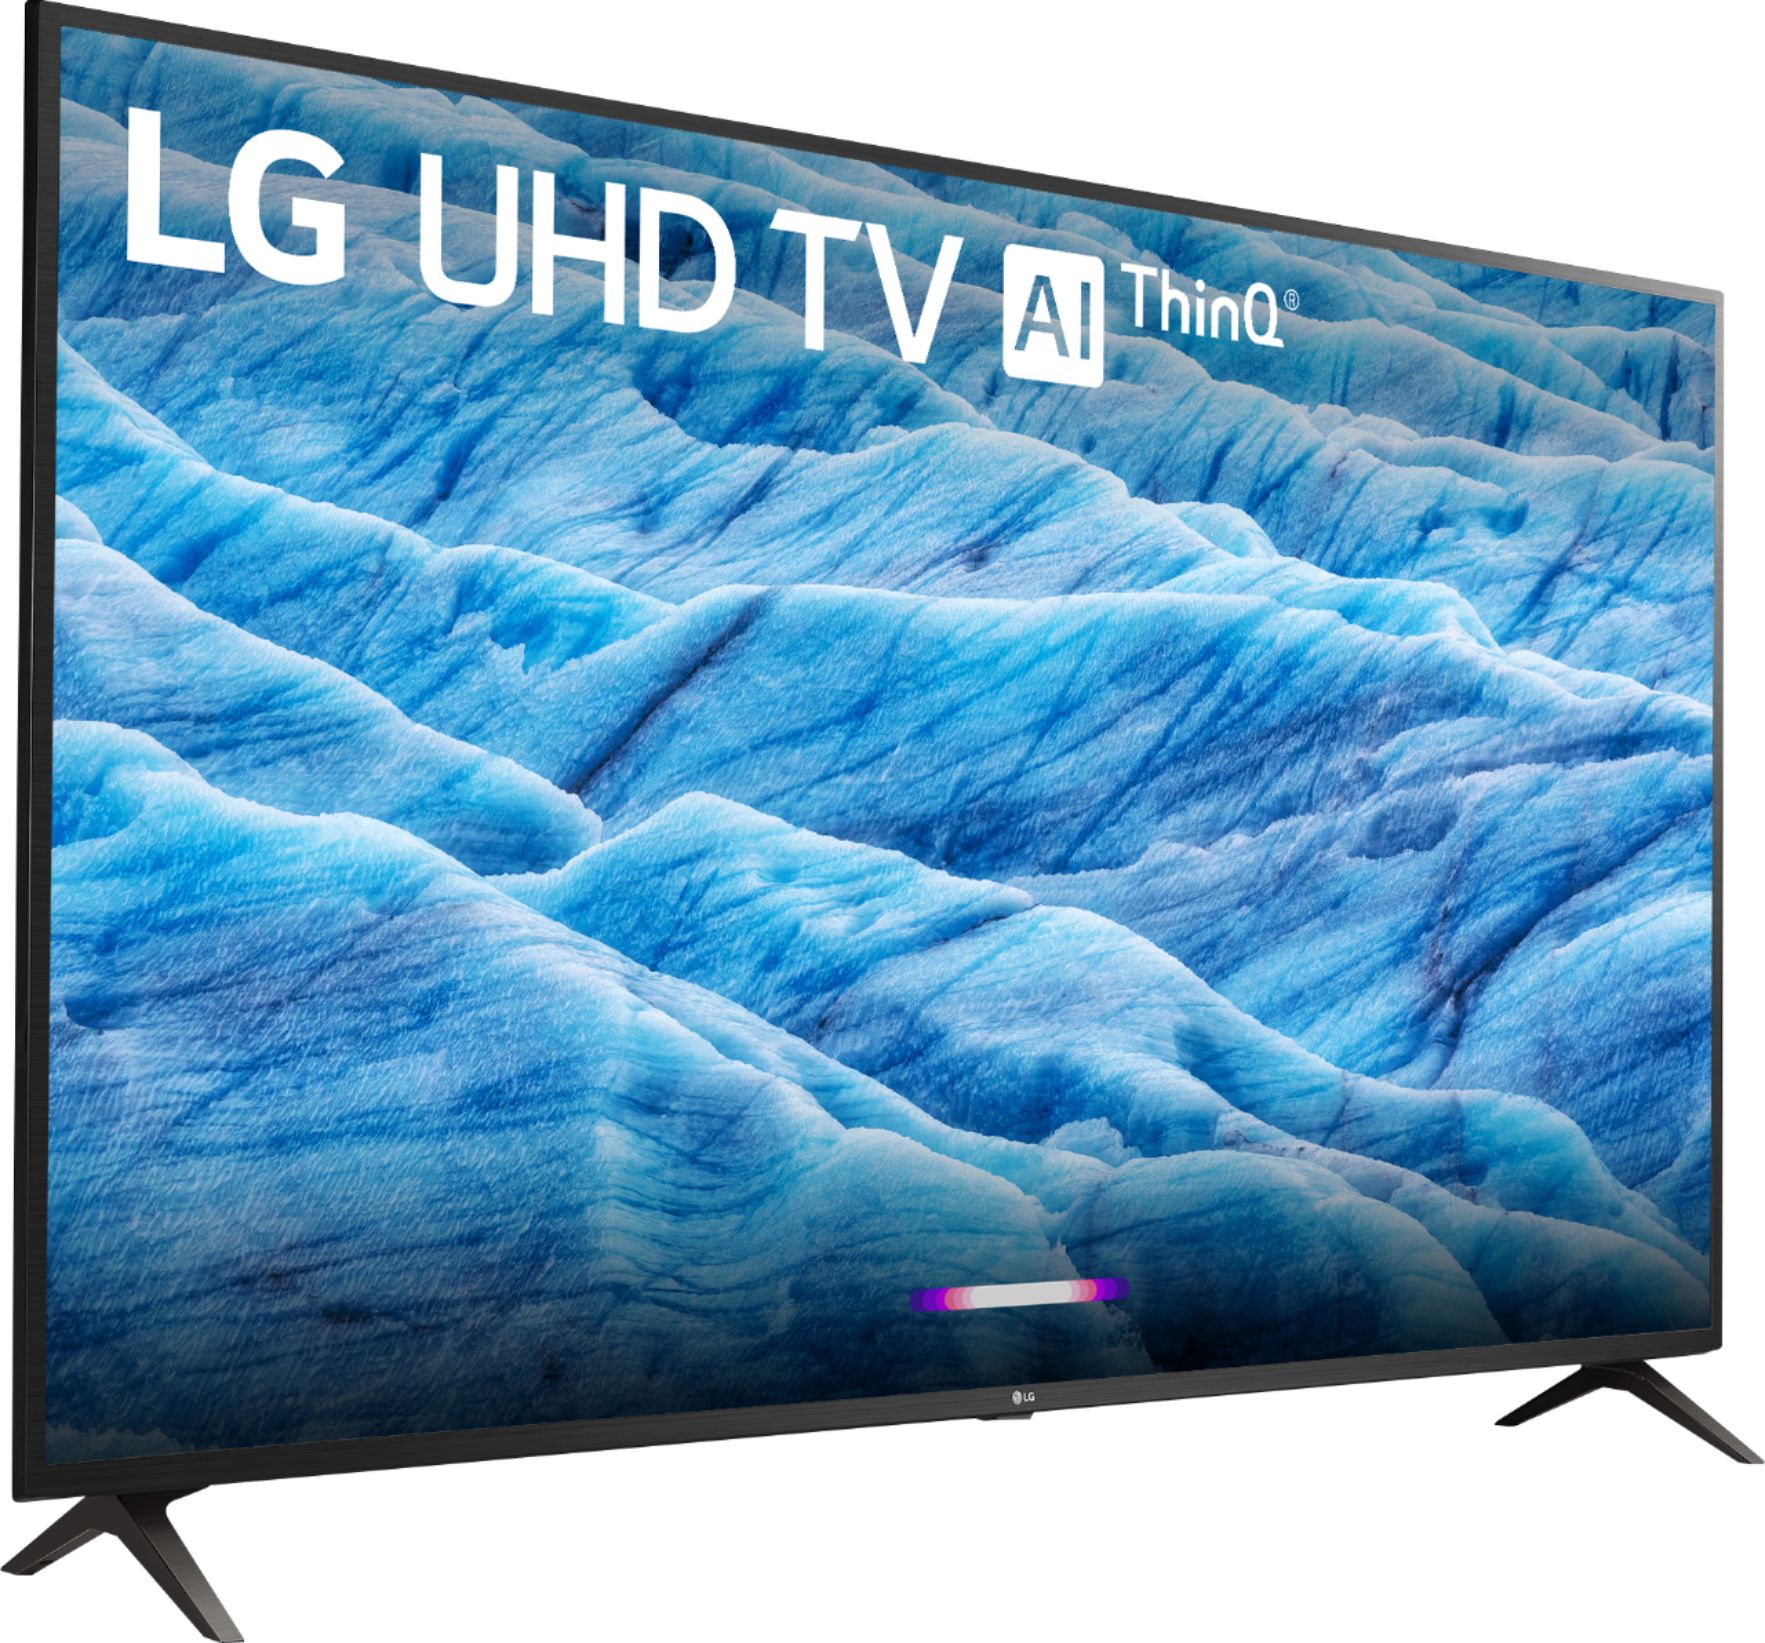 LG UHD TV 65 4K Smart AI - 65UN7300PSC